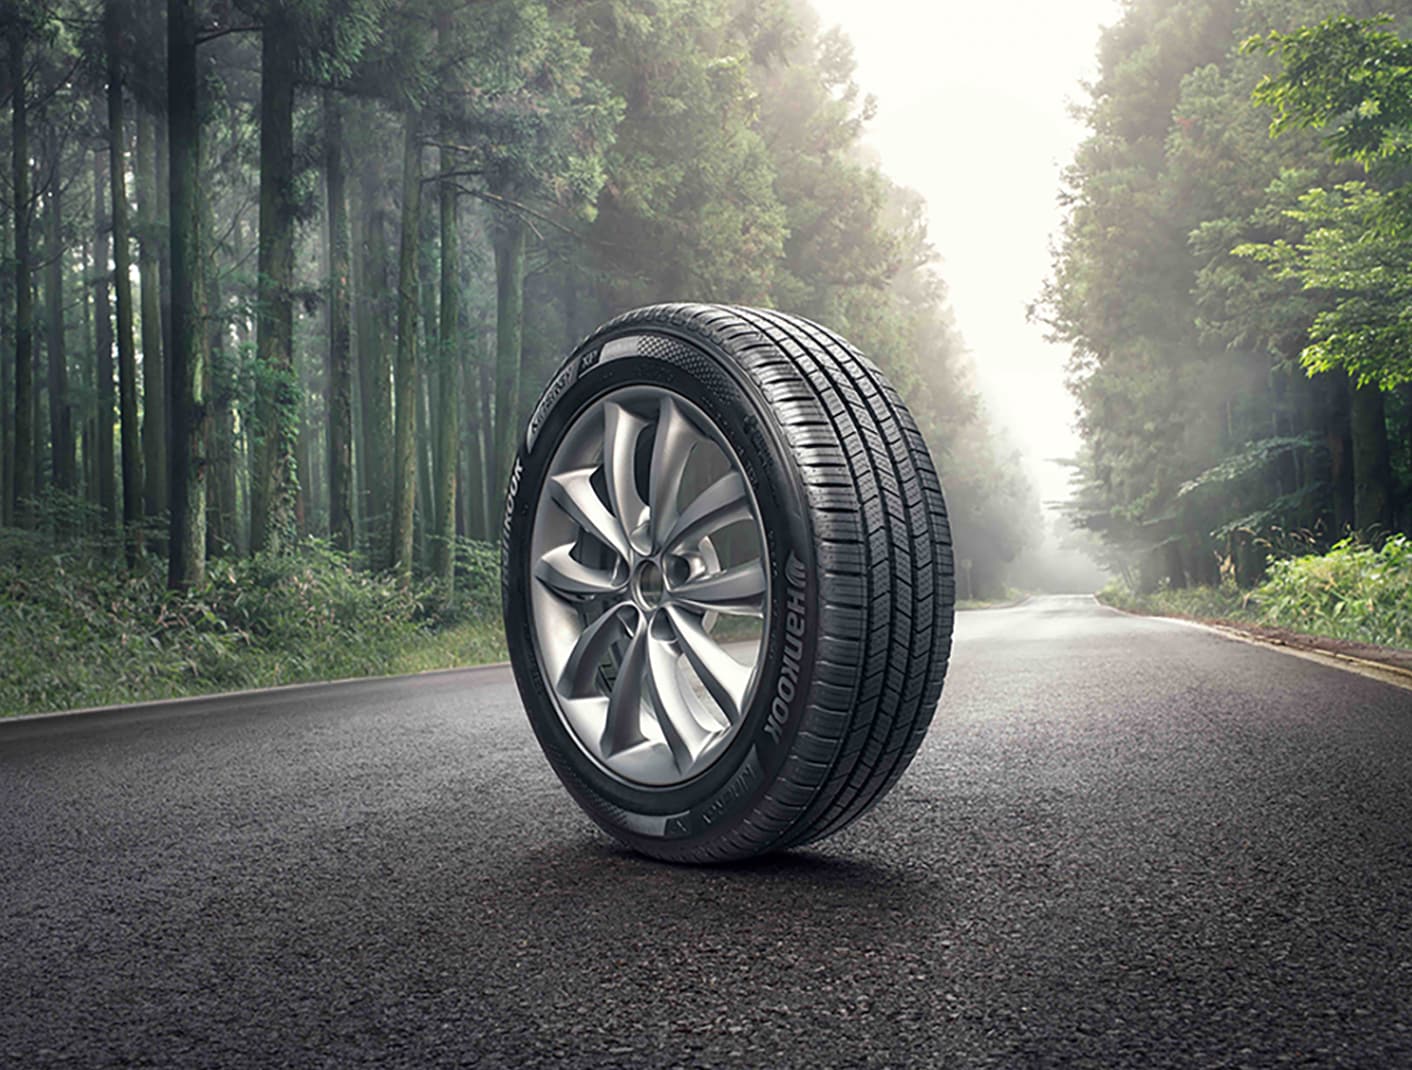 Hankook Tire Canada présente de nouvelles innovations aux gammes de pneus primés